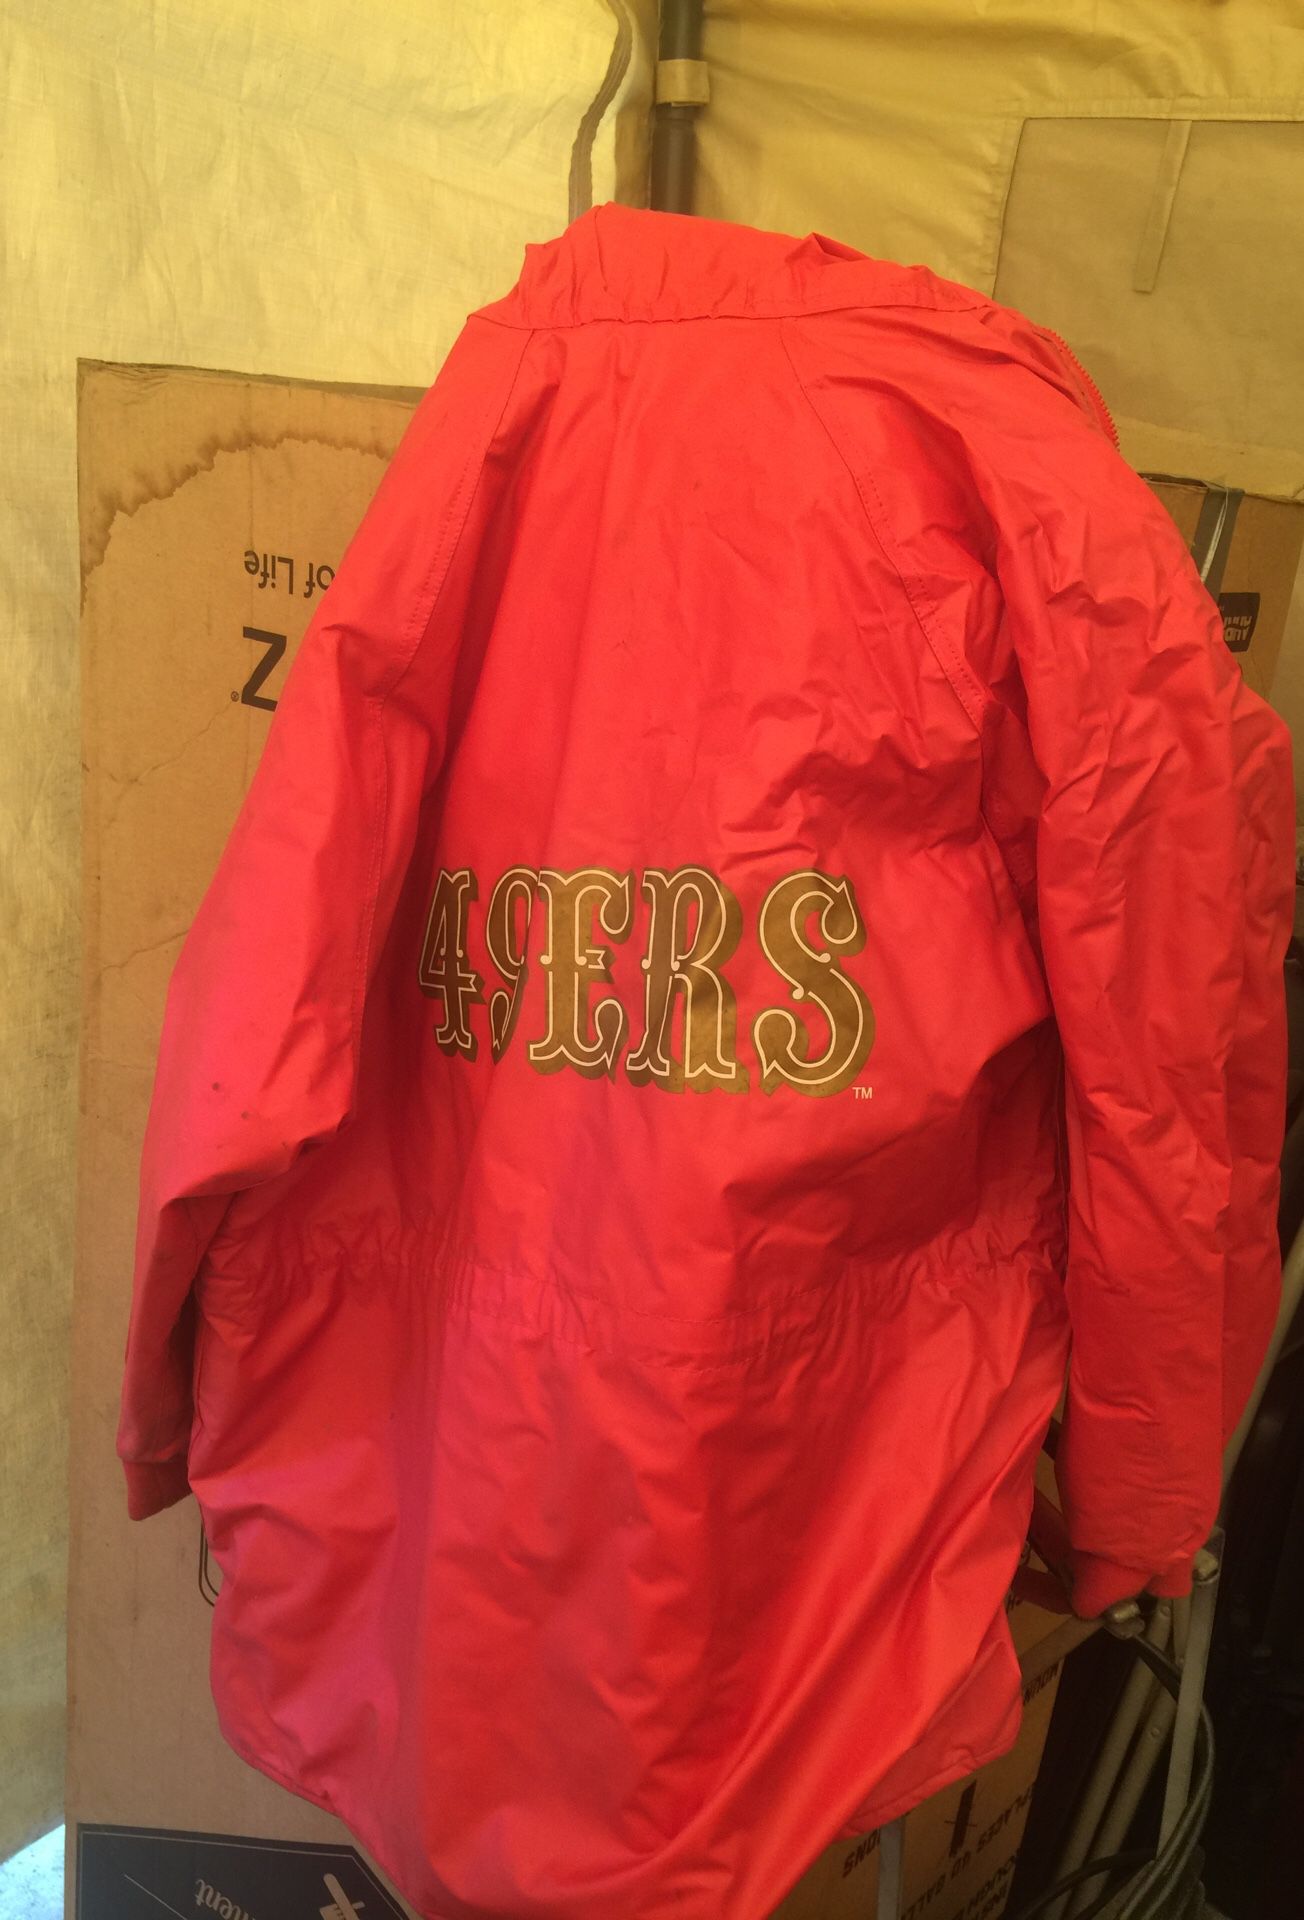 49ers rain coat xl